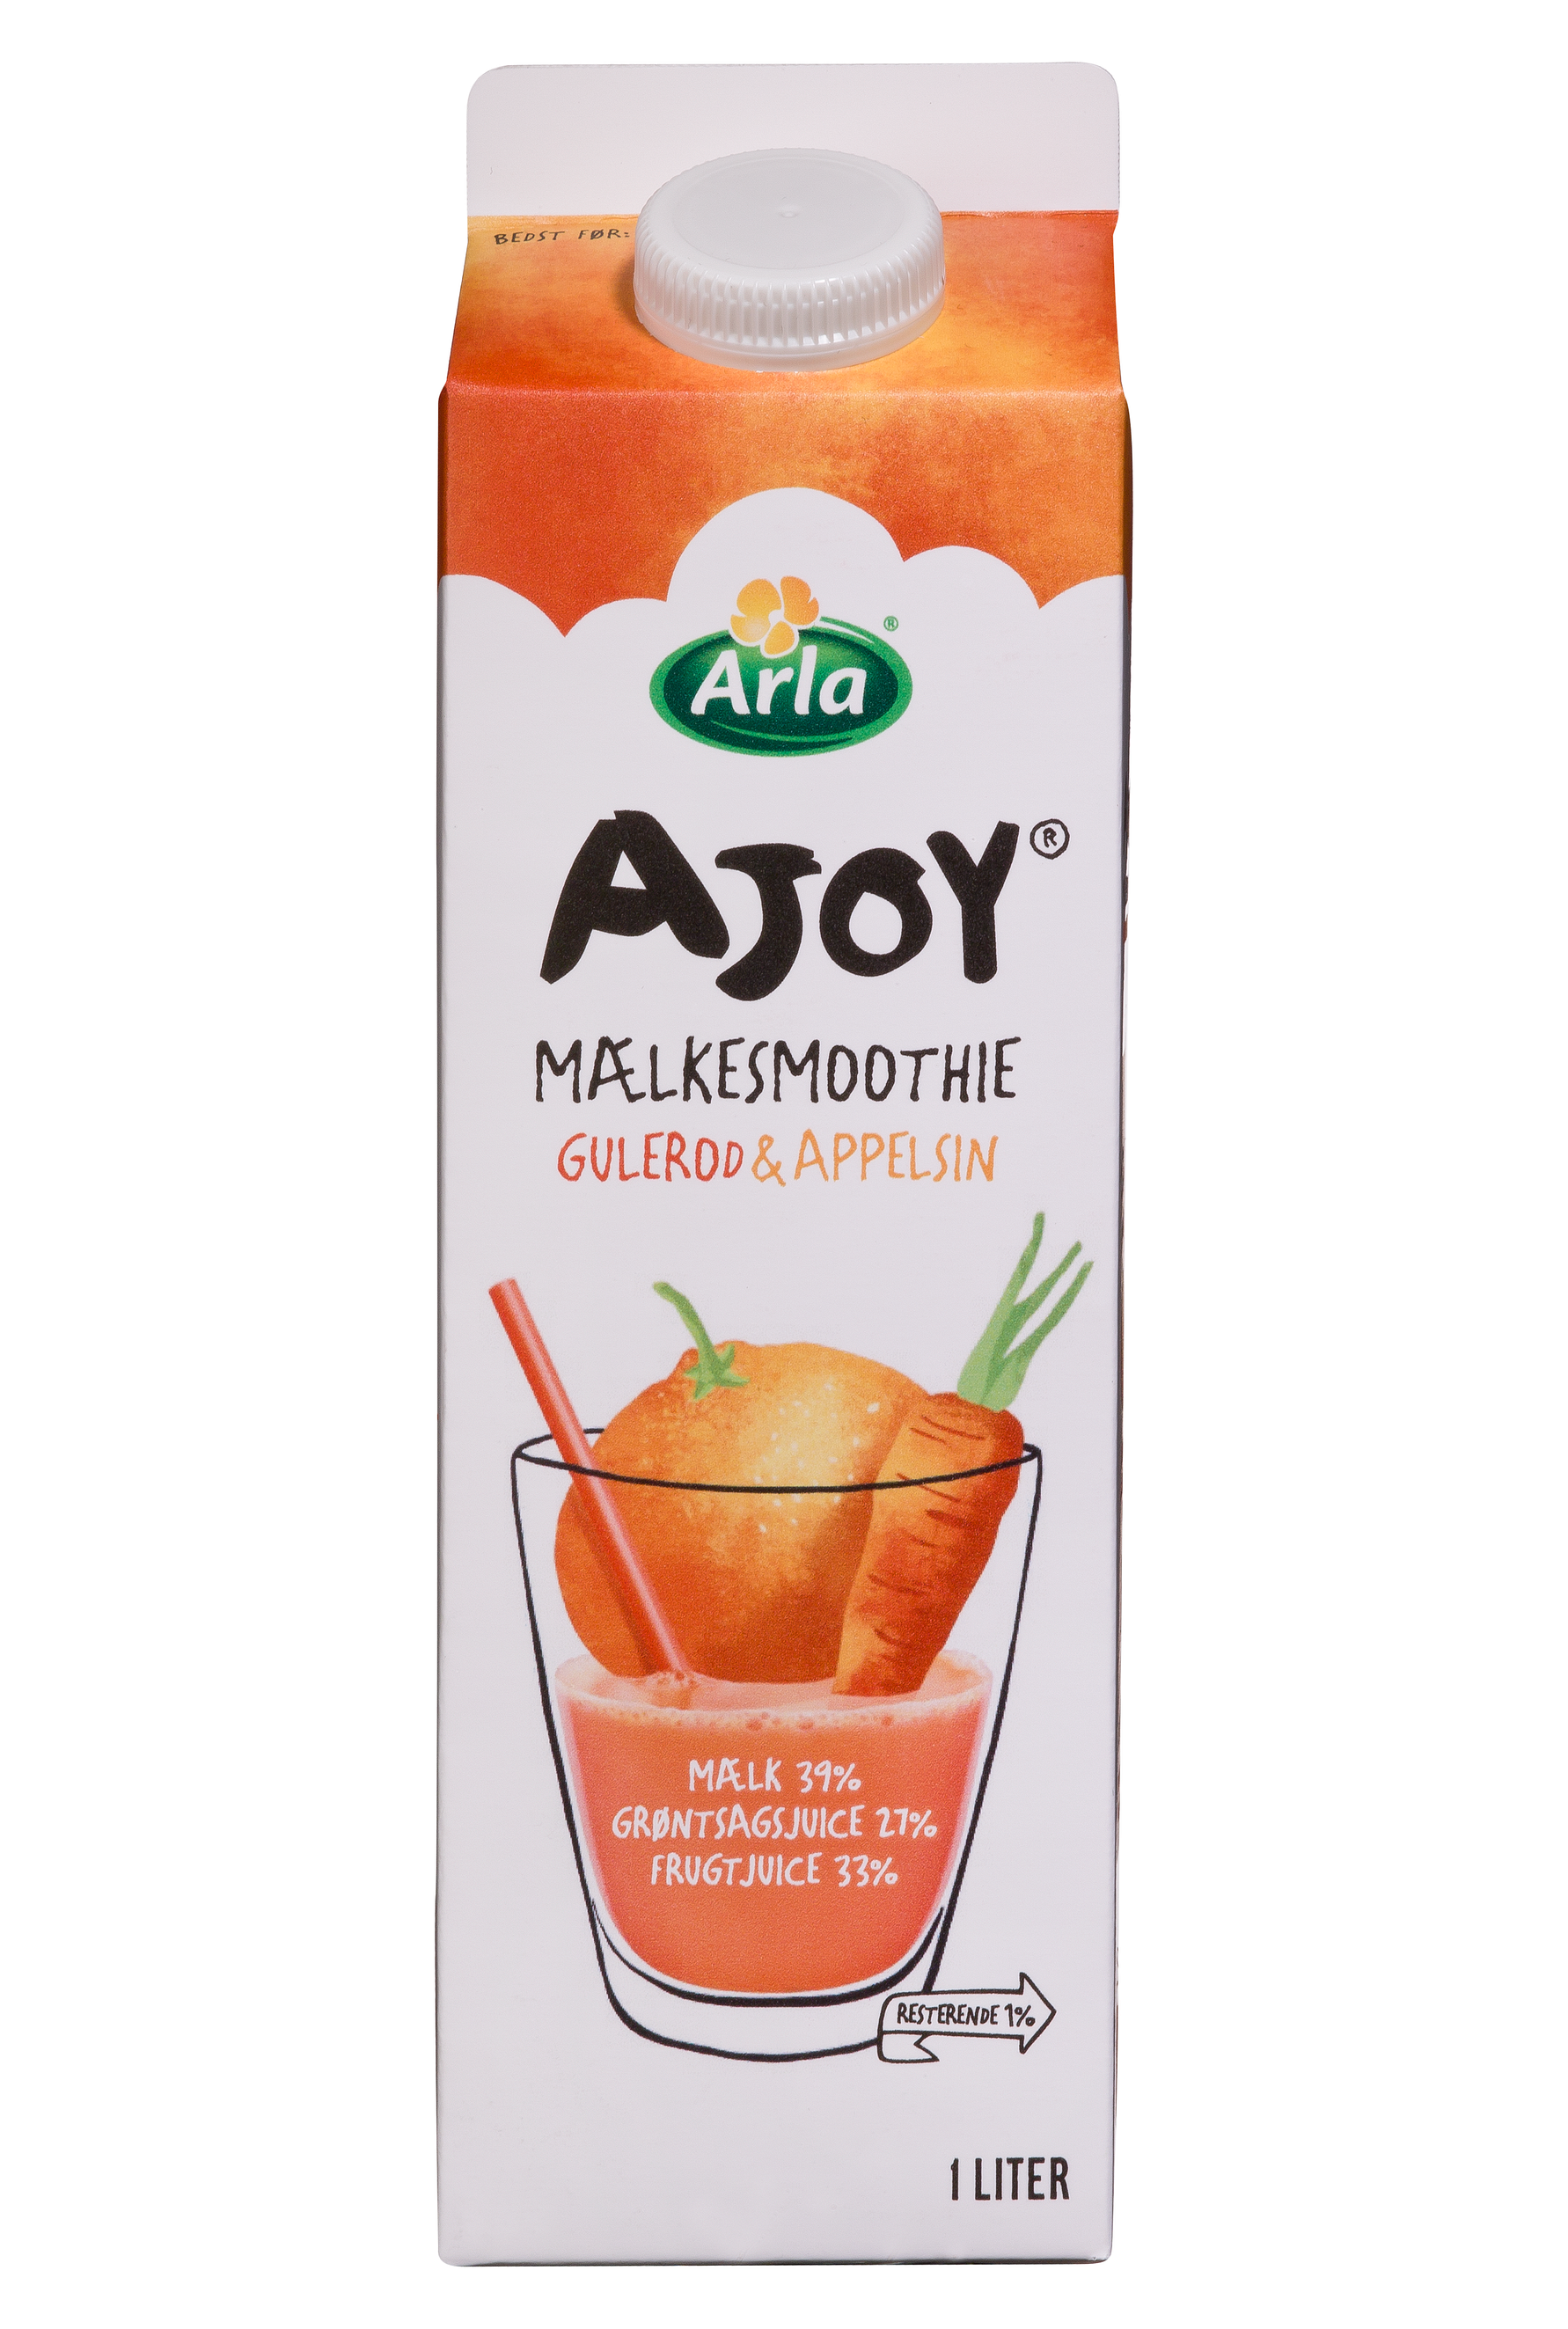 Arla lancerer ny produktserie med frugt- og grøntsagsjuice